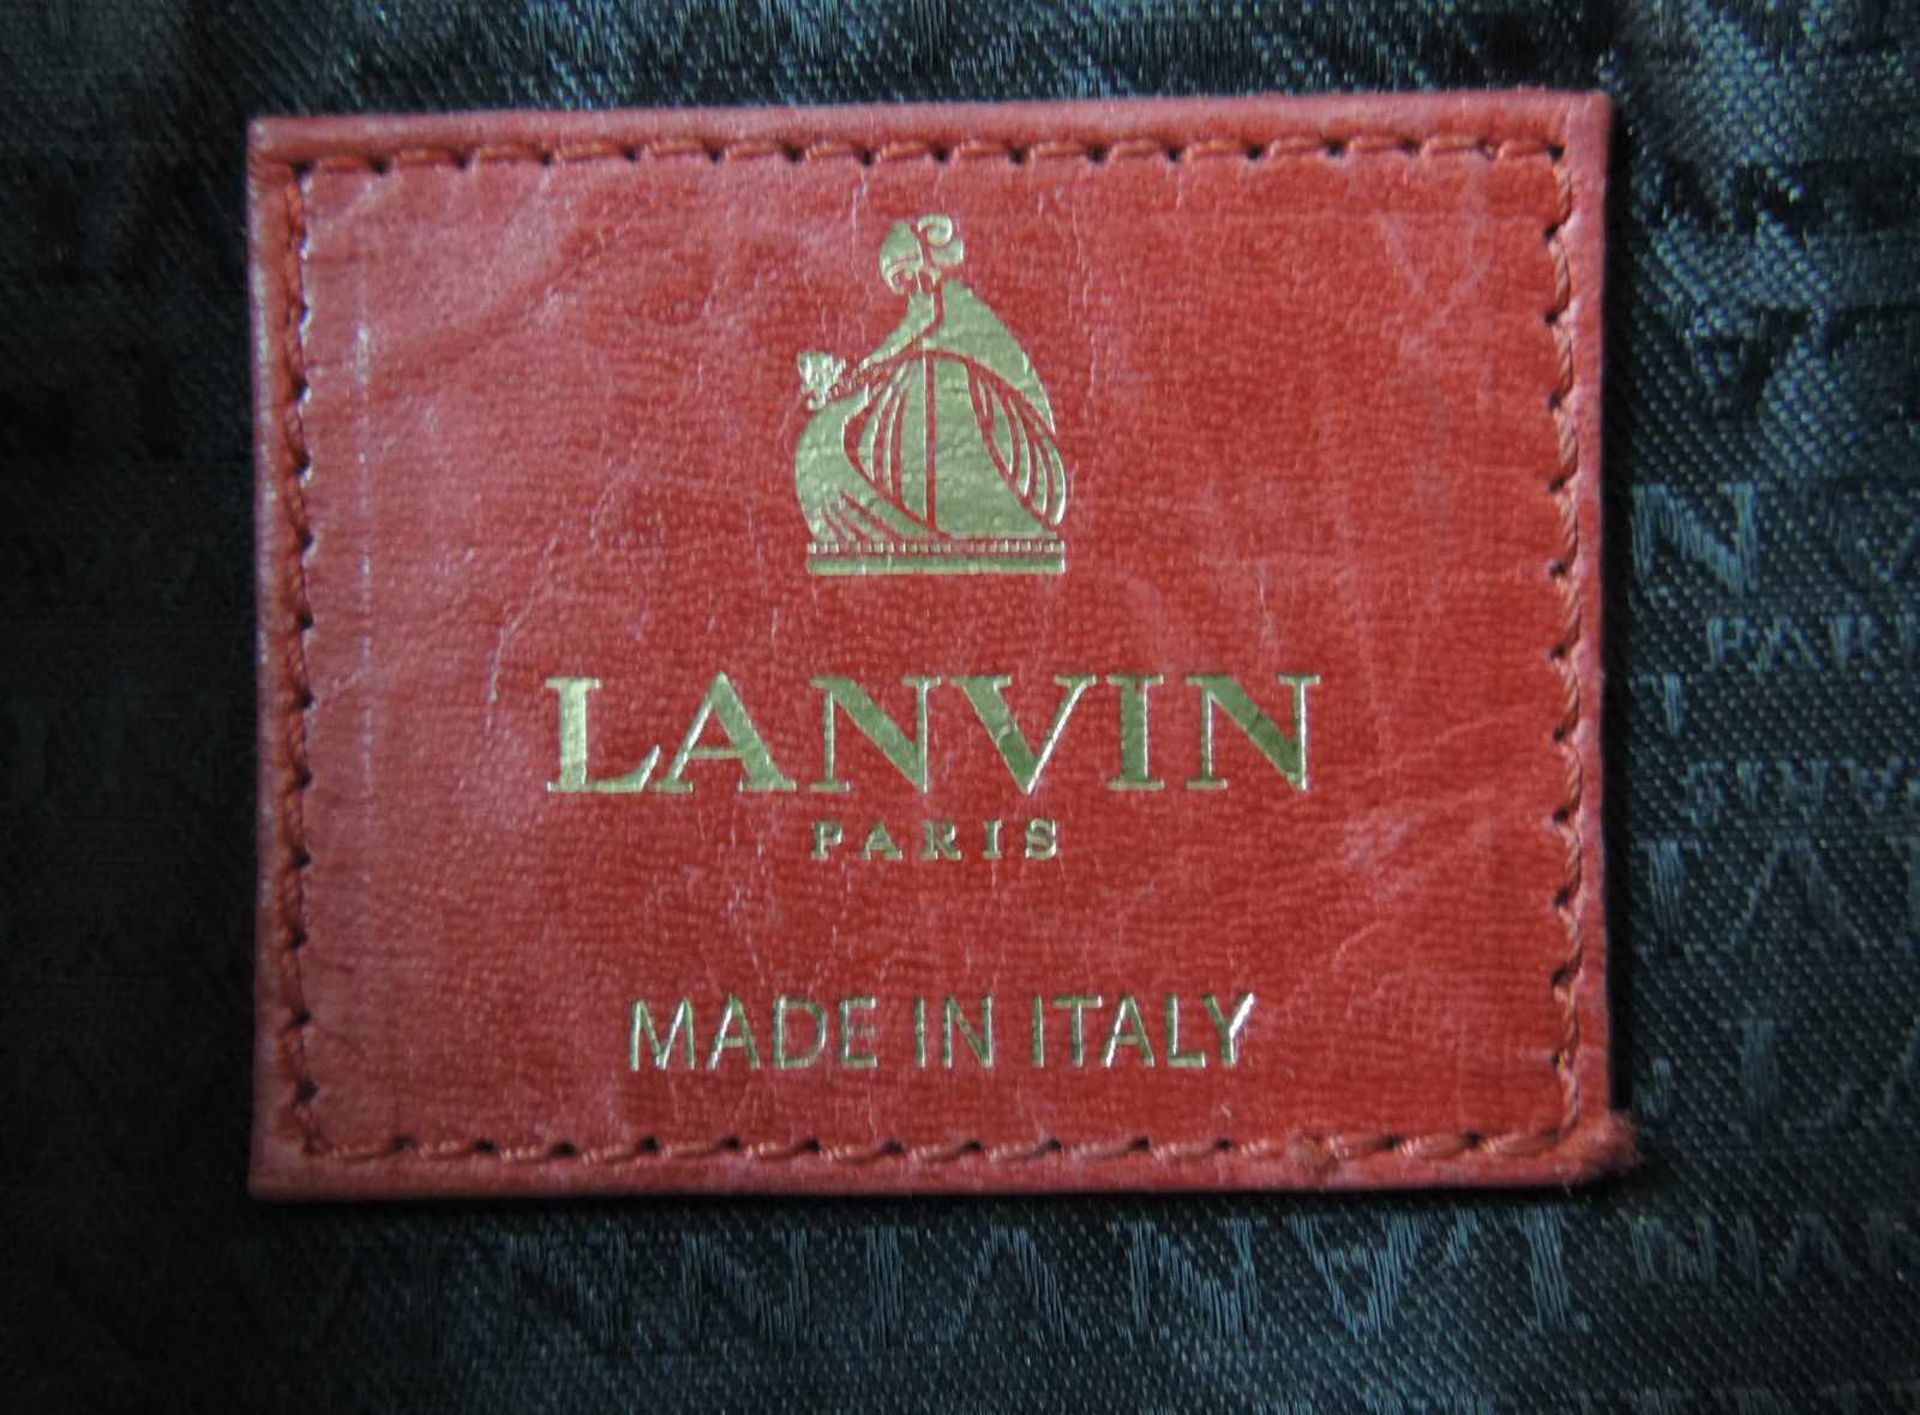 Damenhandtasche Lanvin Paris. 30 cm breit. Made in Italy. Medaille Lanvin angehängt. Ladies - Bild 4 aus 4